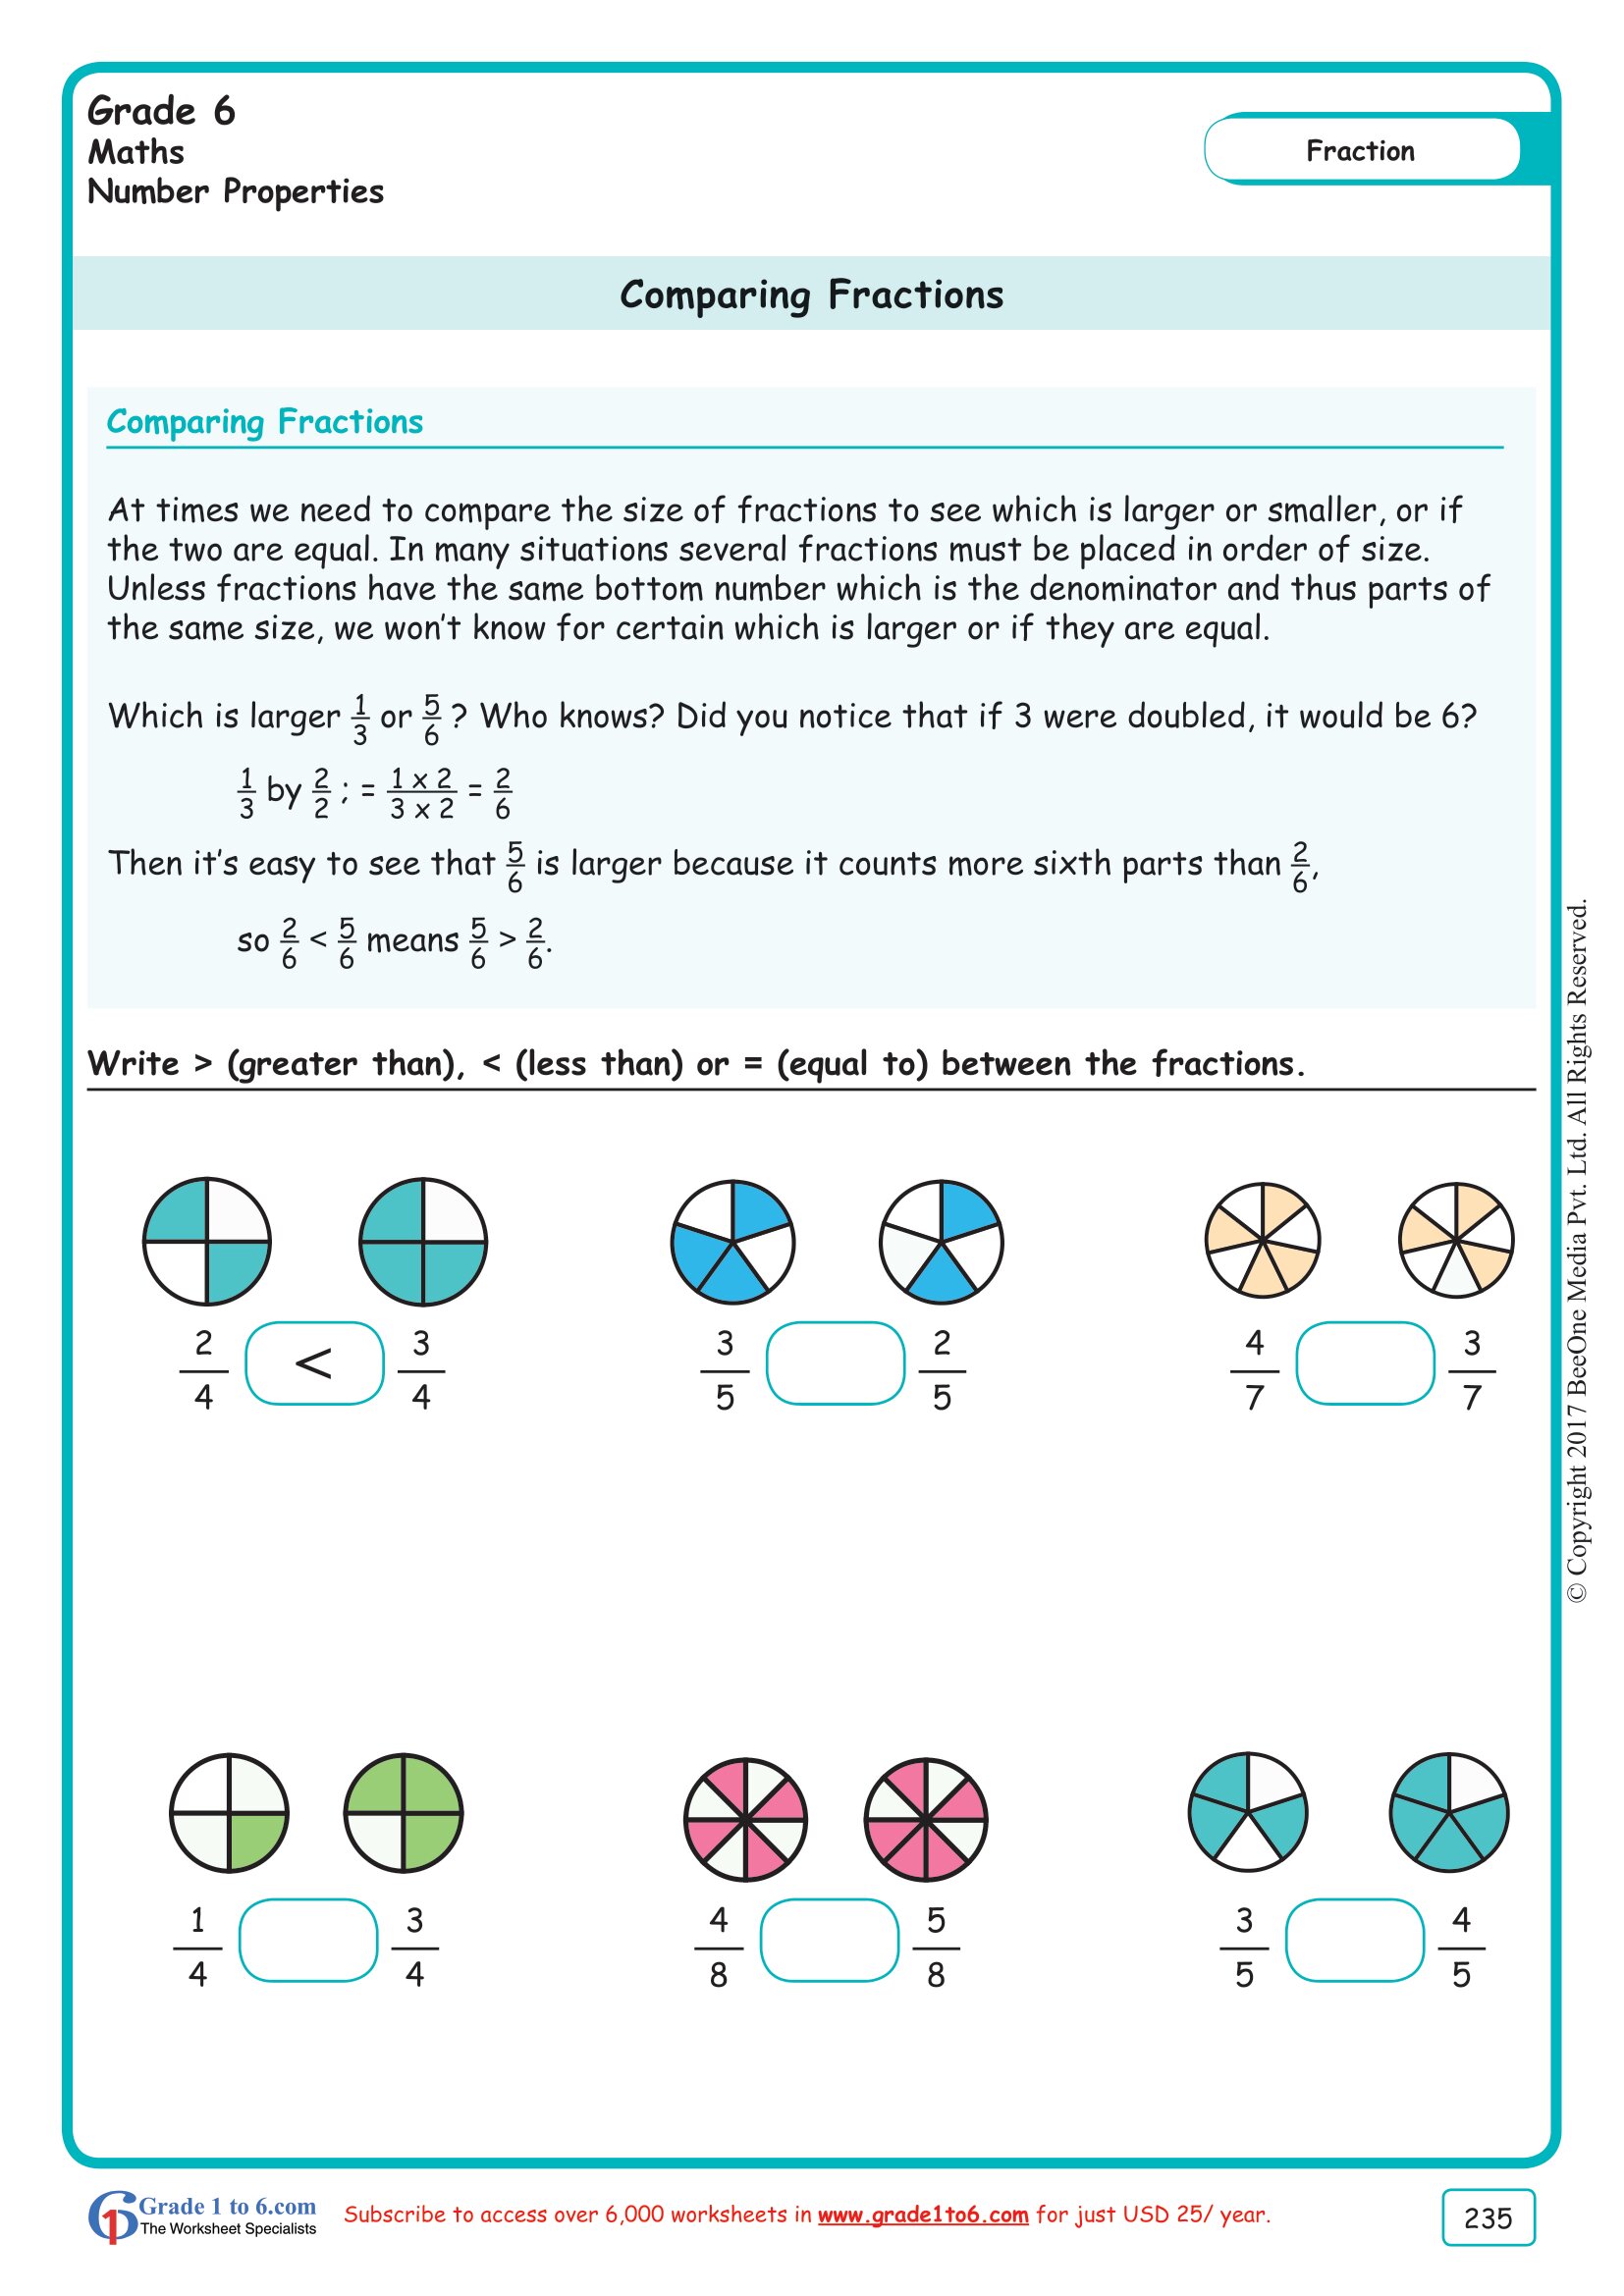 equivalent-fractions-worksheet-grade-6